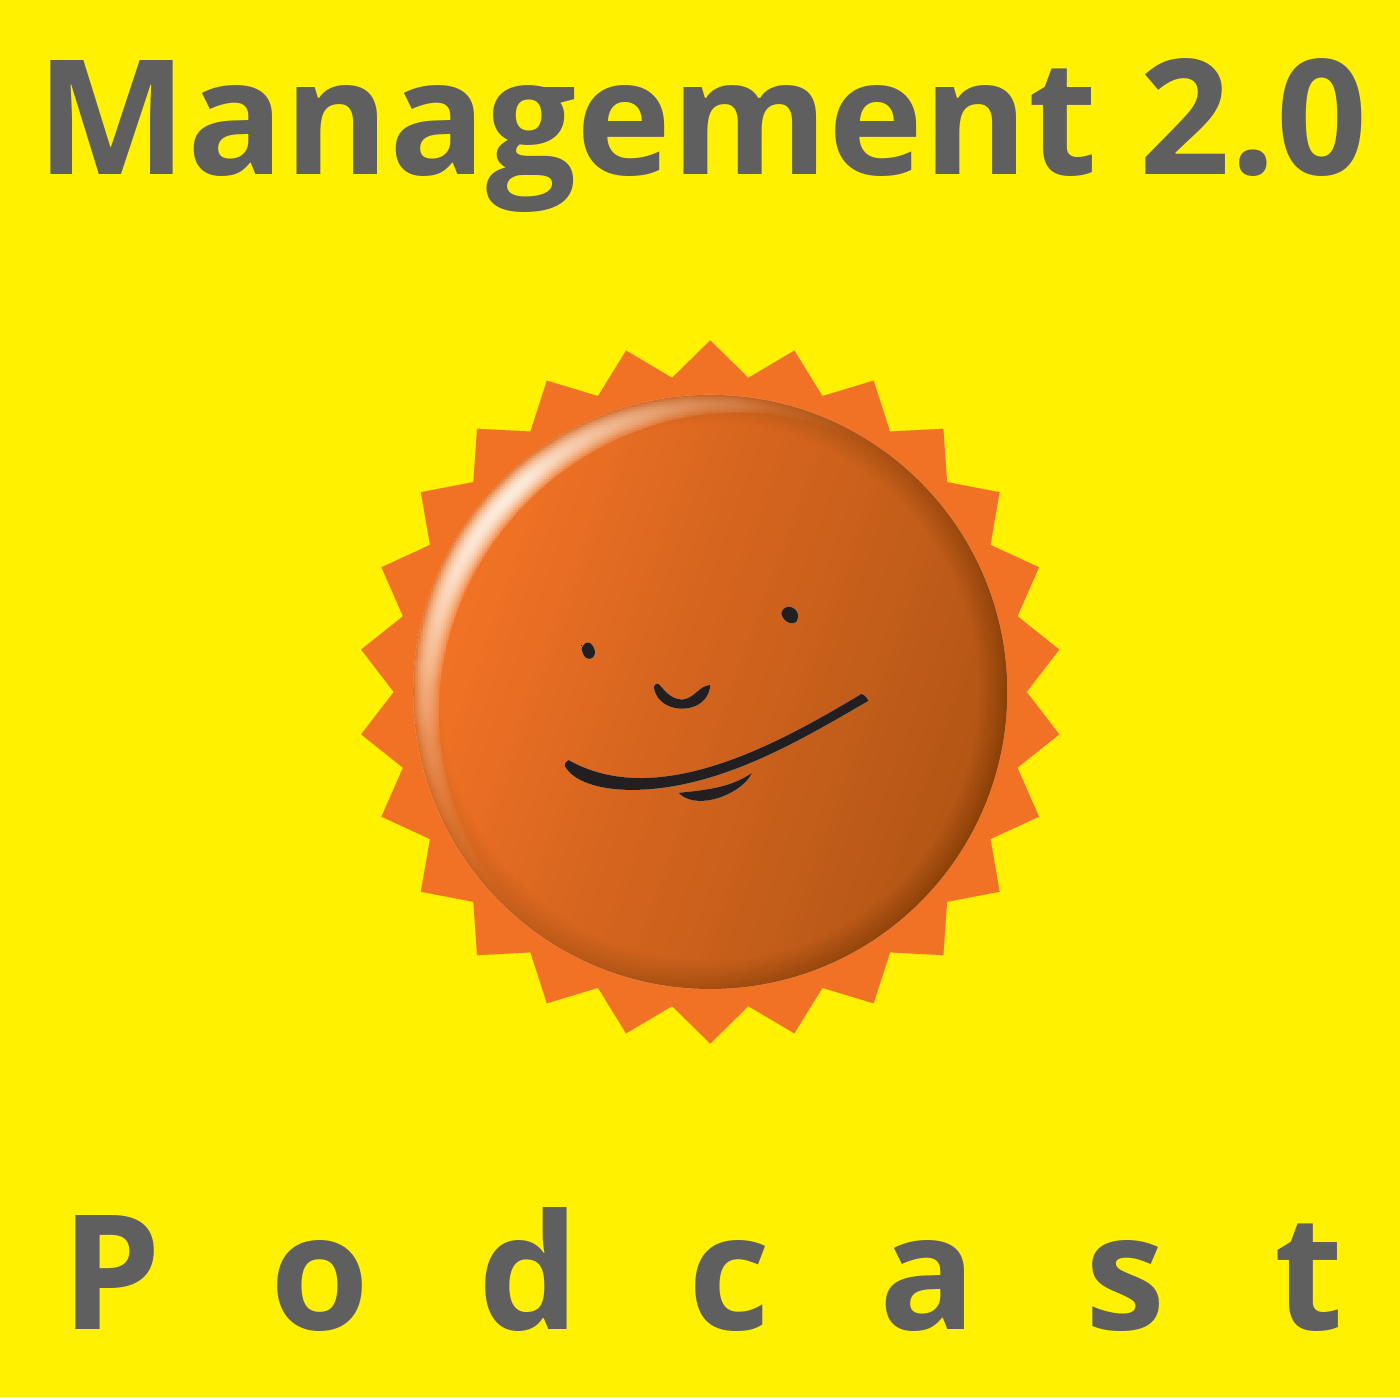 Artwork des Management 2.0 Podcast